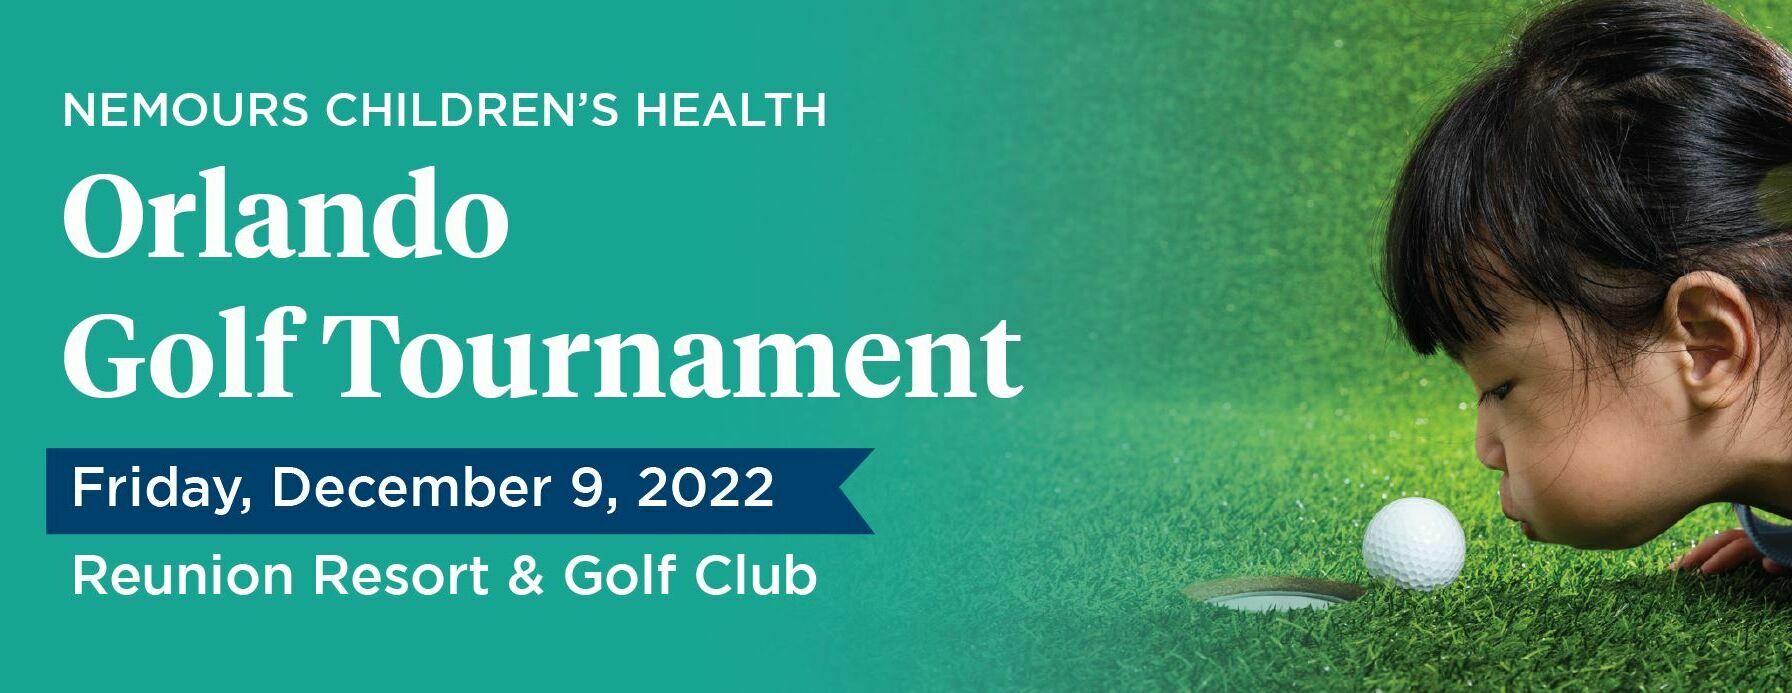 2022 Nemours Orlando Golf Tournament